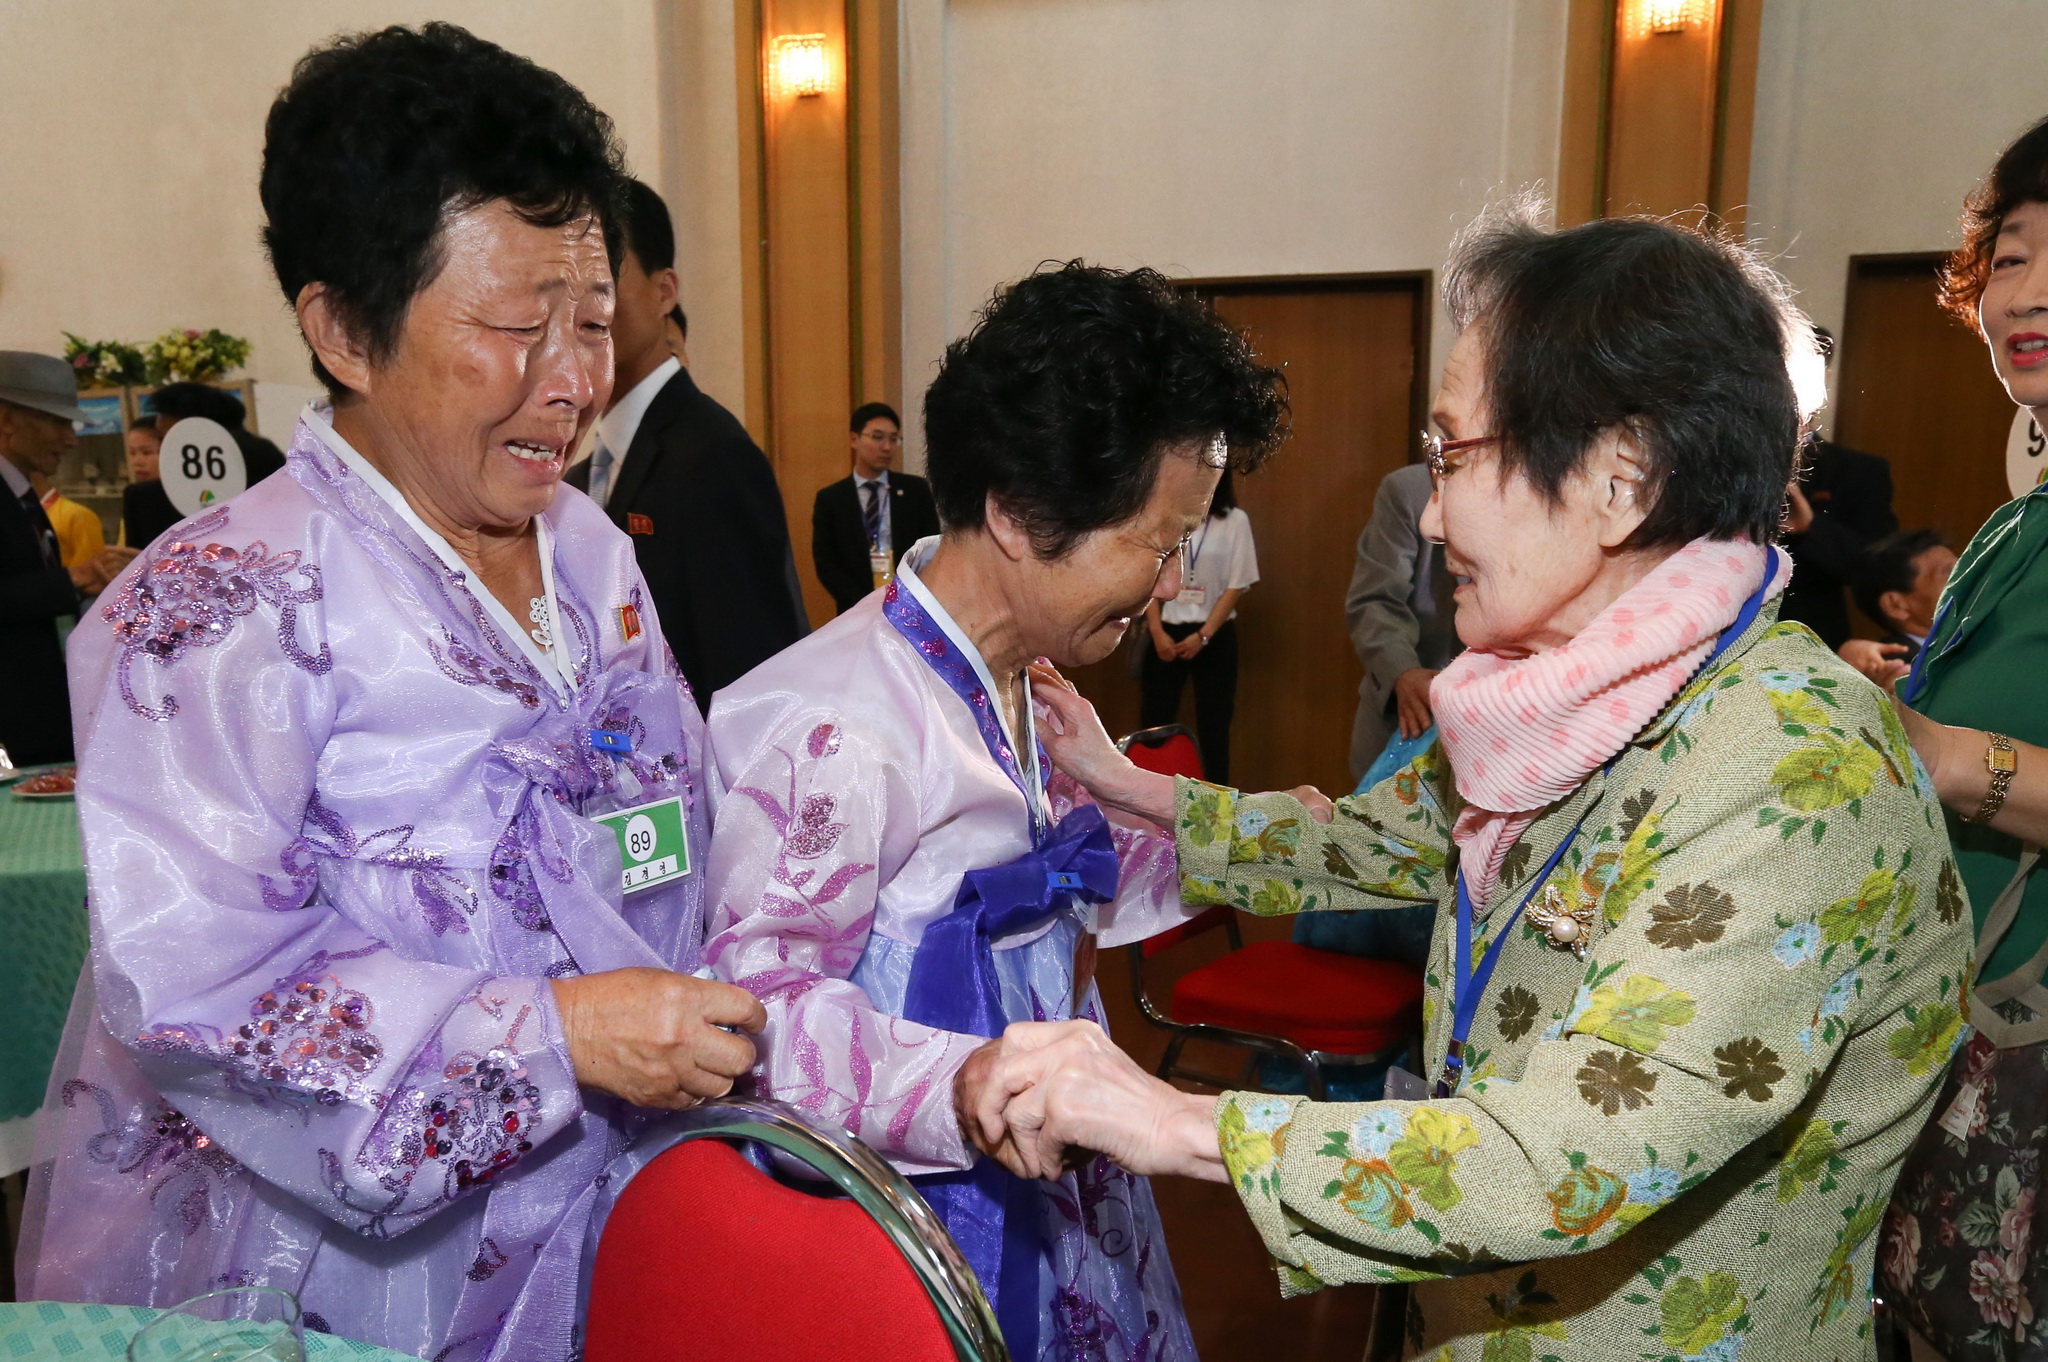 Cụ Han Shin-ja (phải), 99 tuổi, ở Hàn Quốc gặp em gái Kim Kyong Sil (giữa), 72 tuổi, và Kim Kyong Young (trái), 71 tuổi, ở Triều Tiên trong buổi đoàn tụ ở khu nghỉ dưỡng núi Kumgang ngày 20/8. (Ảnh: AFP/TTXVN)